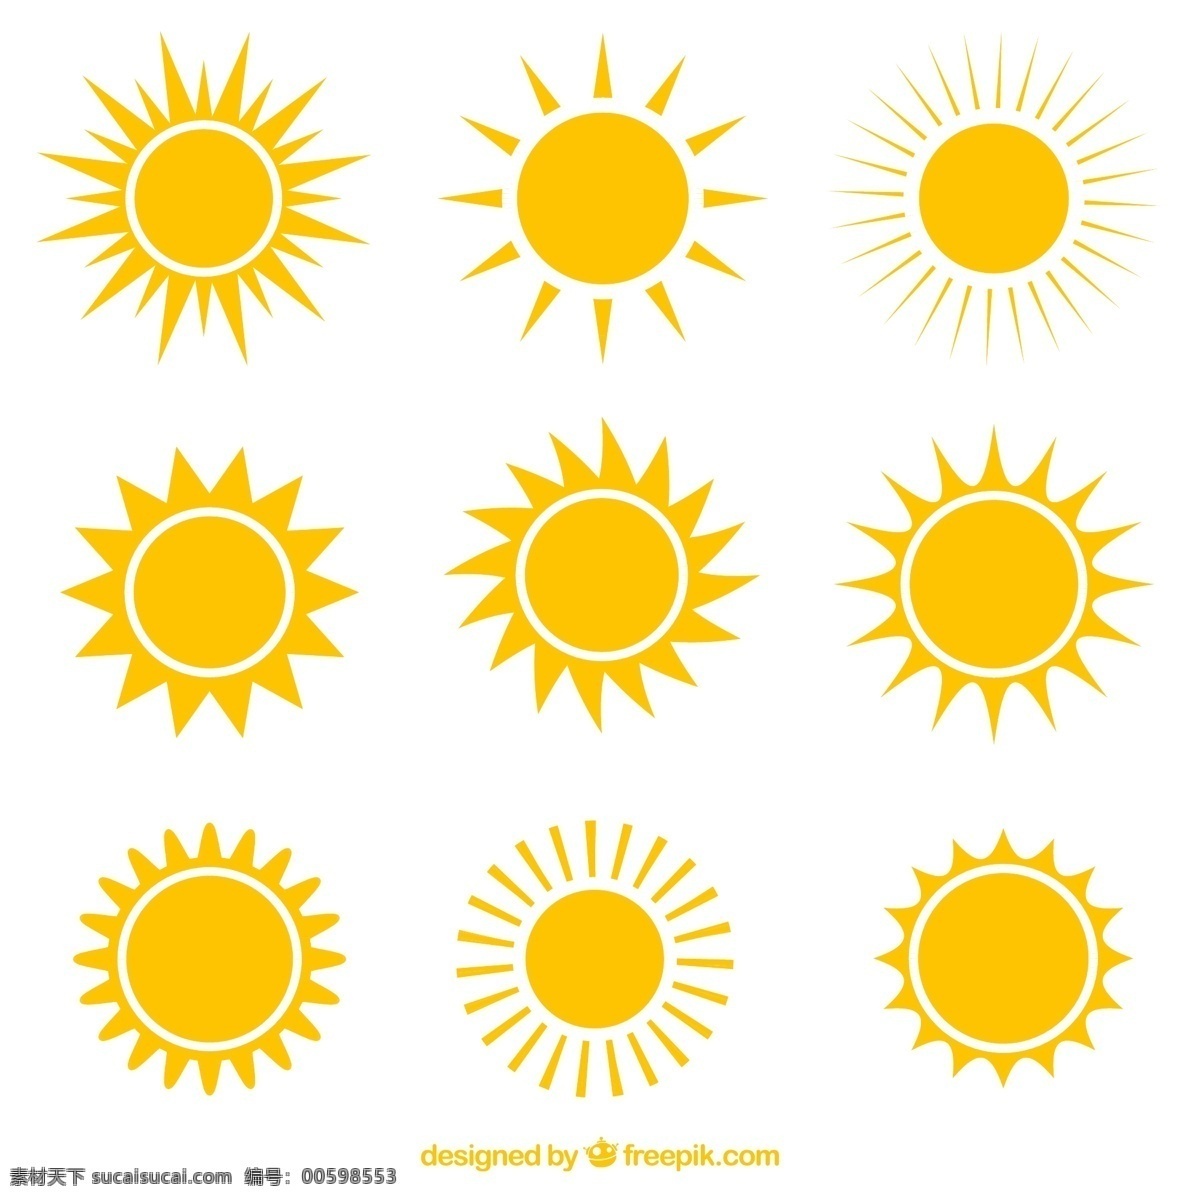 创意 太阳 图标 矢量图 标签 阳光 夏季 夏天 夏日 插画 背景 海报 画册